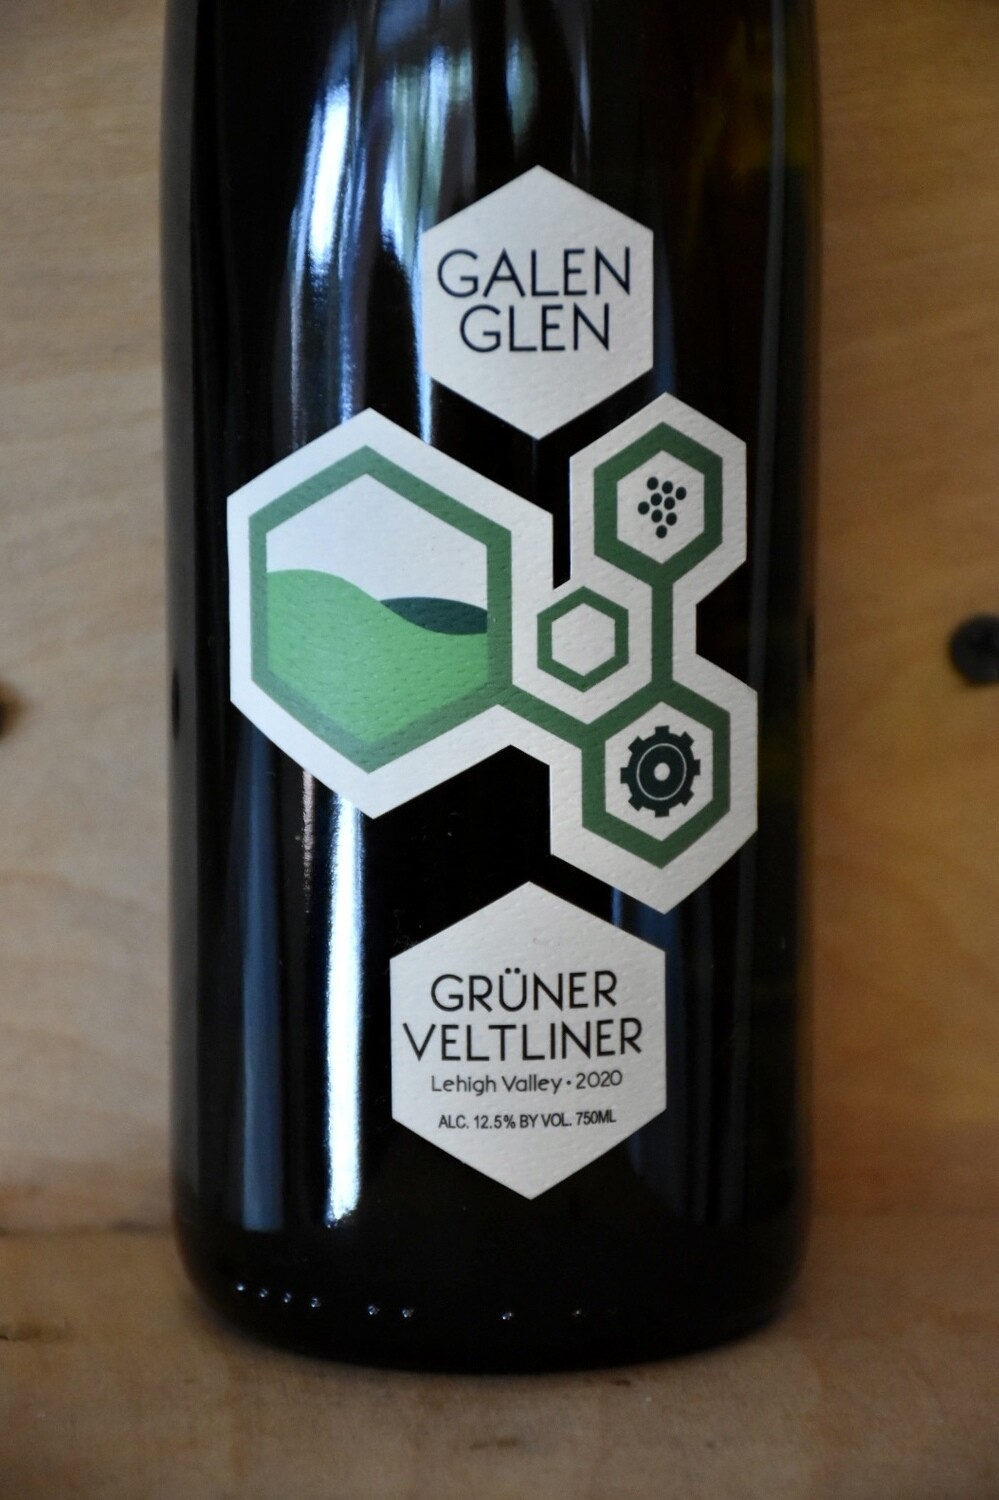 Galen Glen Gruner Vinology Lehigh Valley